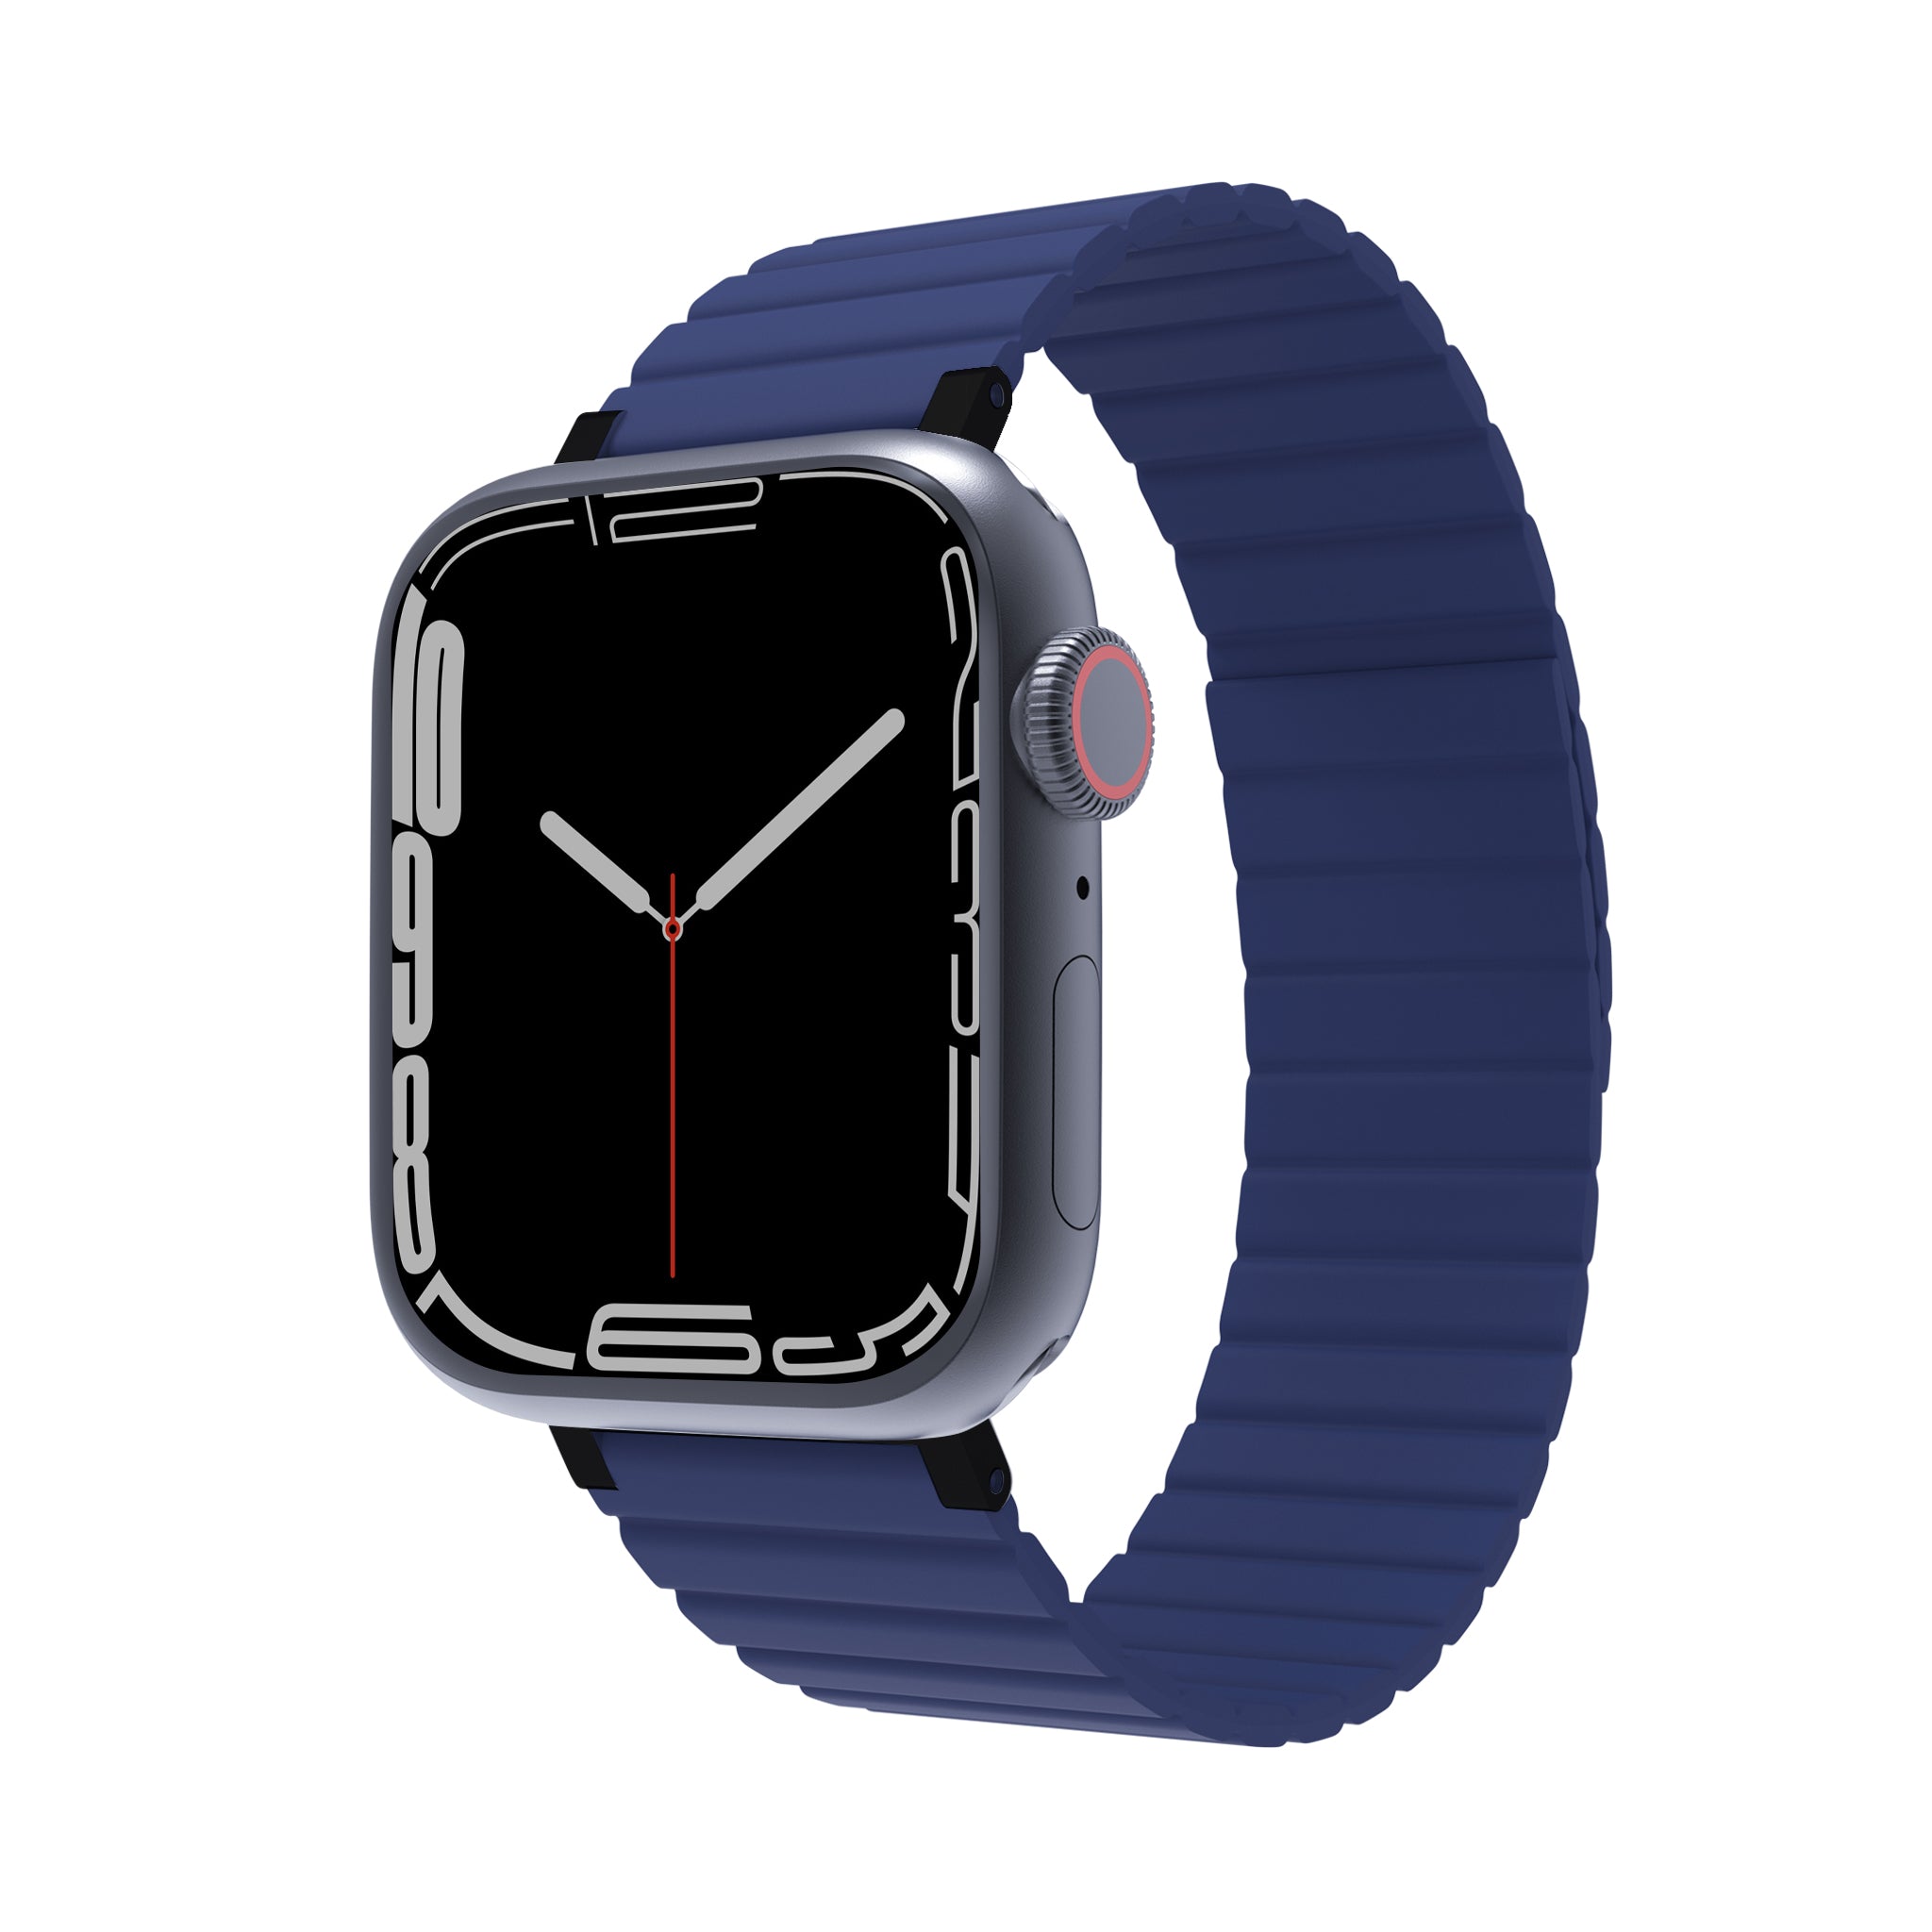 Accessoire Coque Bracelet Apple Watch Offshore Blue Bleu